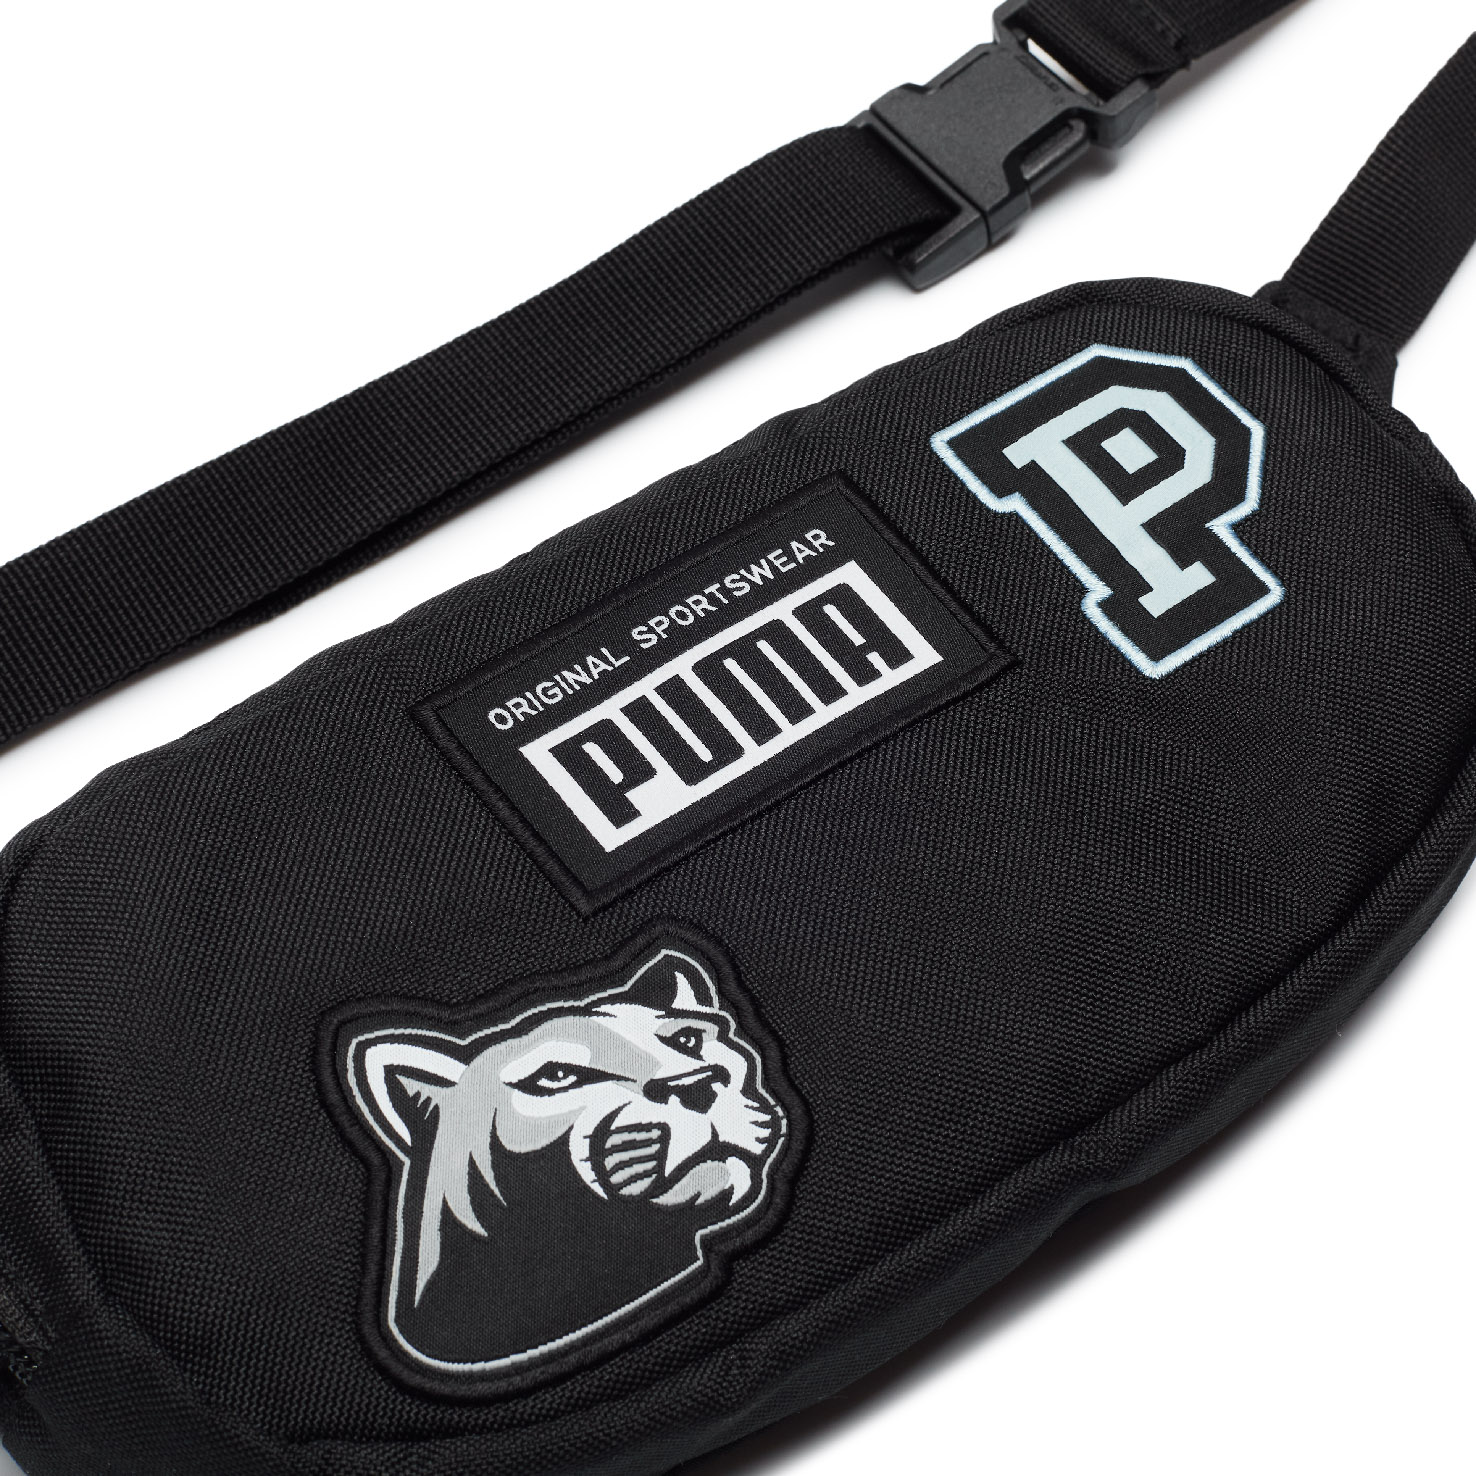 Patch Waist Bag PUMA, размер Один размер, цвет черный PM078562 - фото 3